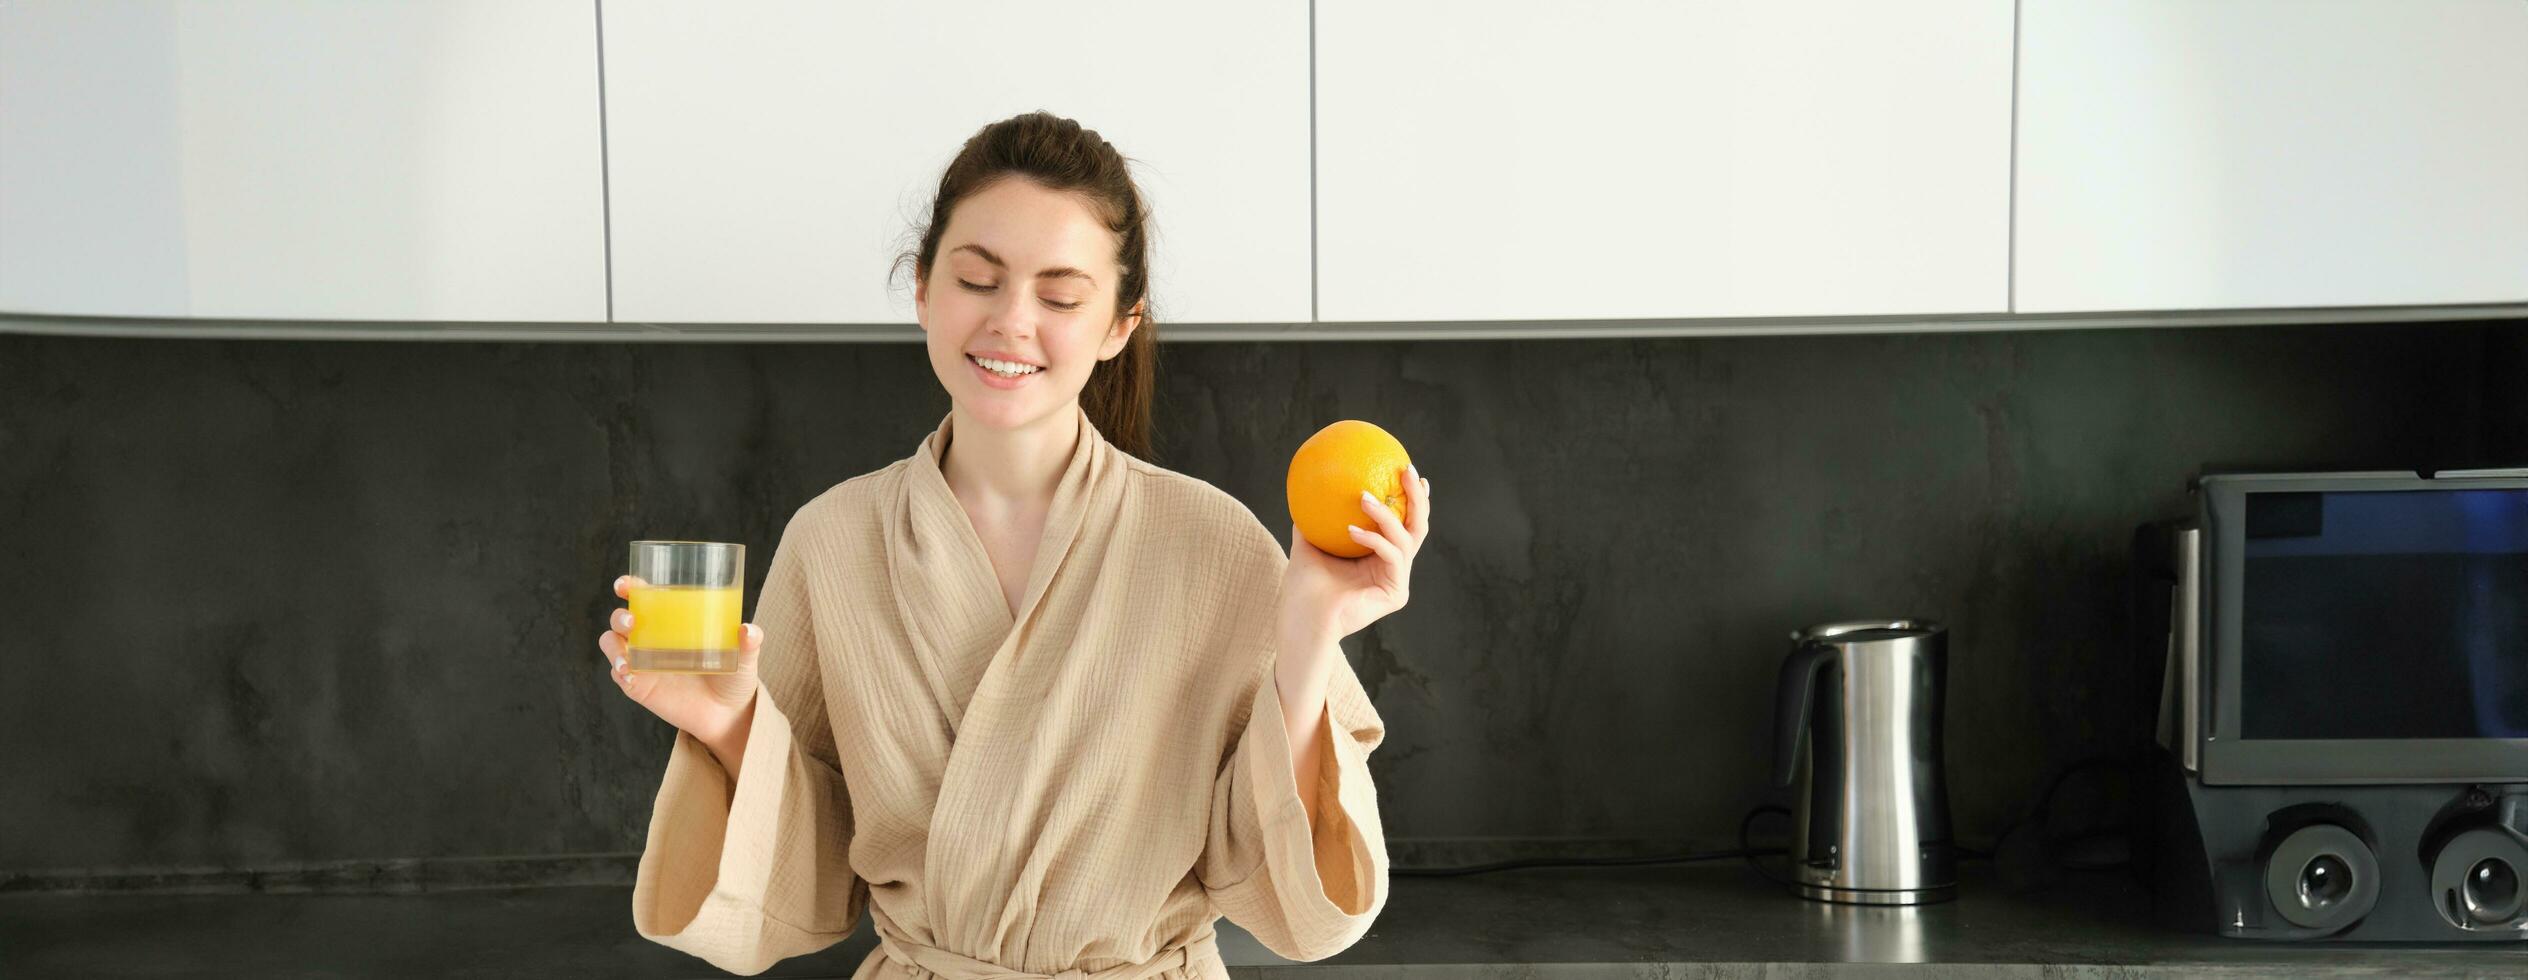 image de beau en bonne santé femme dans peignoir de bain, en buvant Frais jus, montrant Orange fruit, posant dans cuisine photo